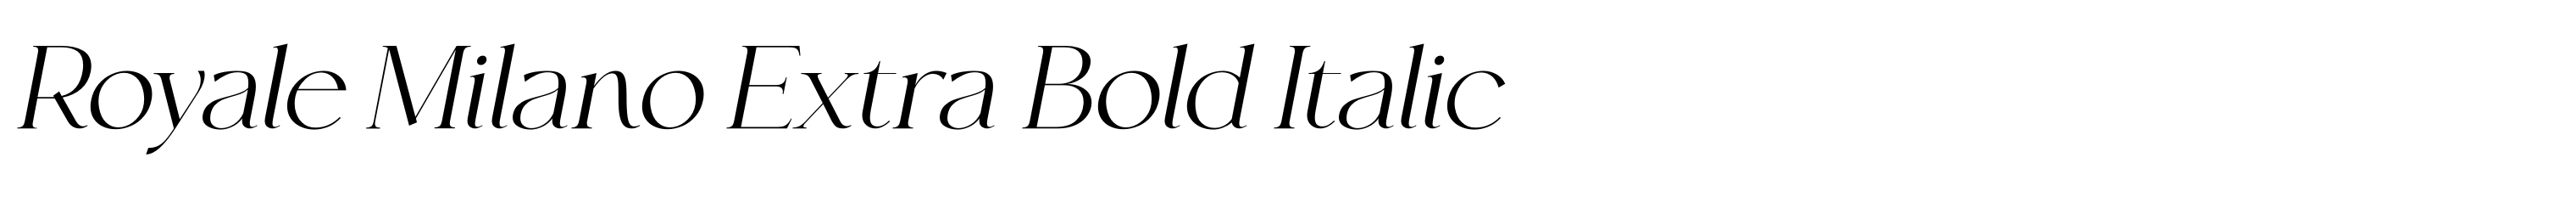 Royale Milano Extra Bold Italic